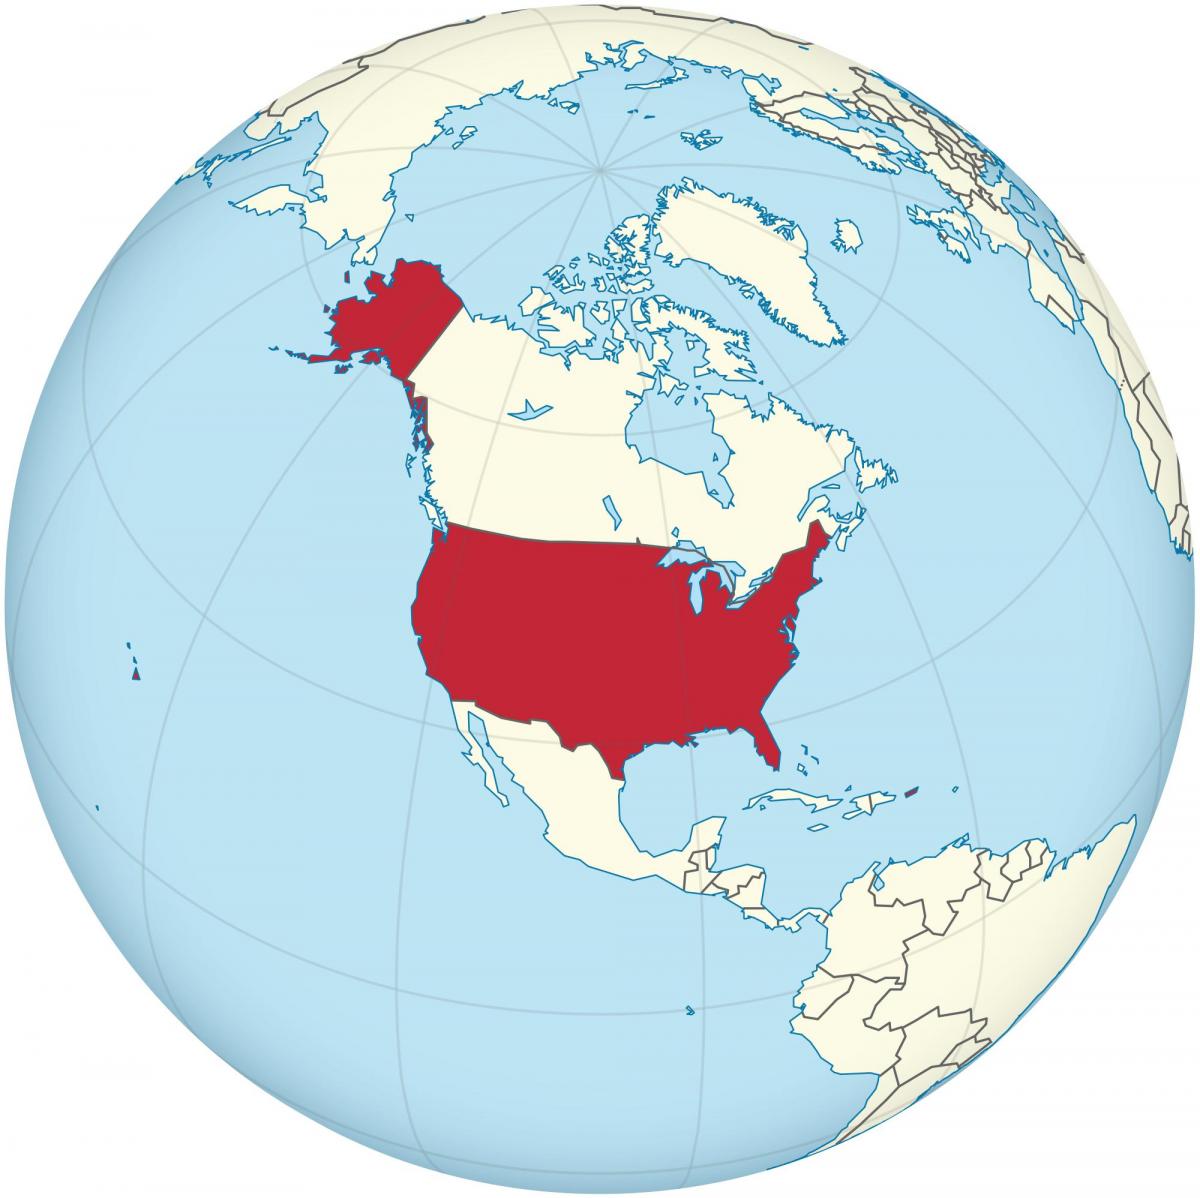 アメリカ大陸の地図上のアメリカの位置